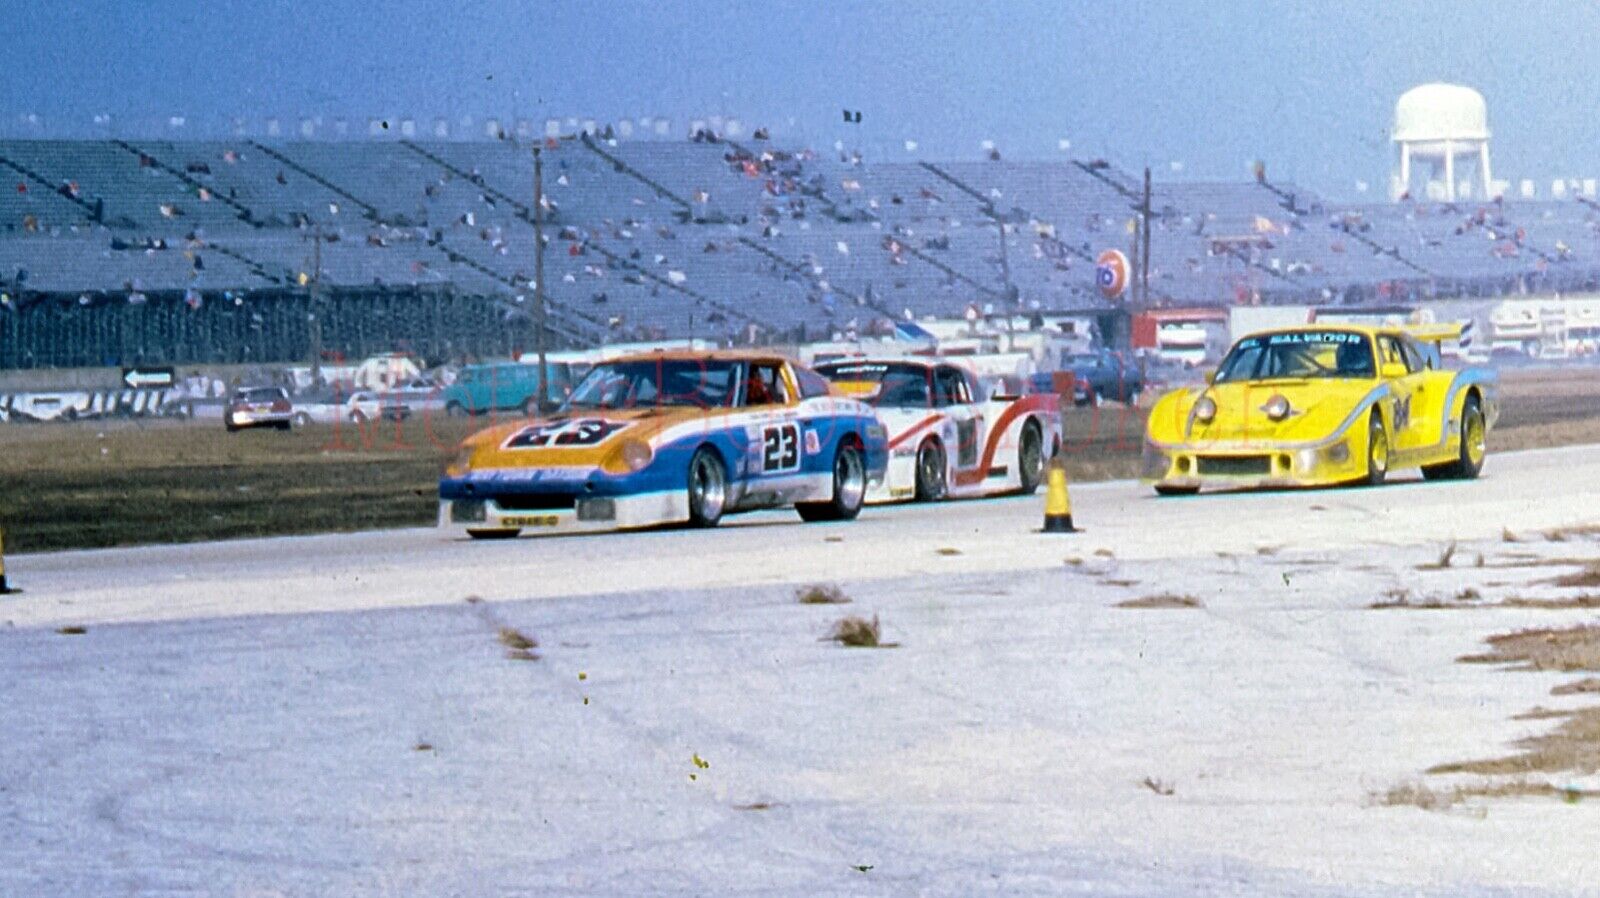 1981 slide Daytona 24hr Porsche 935 M16, Davenport Datsun 280ZX; Porsche 935